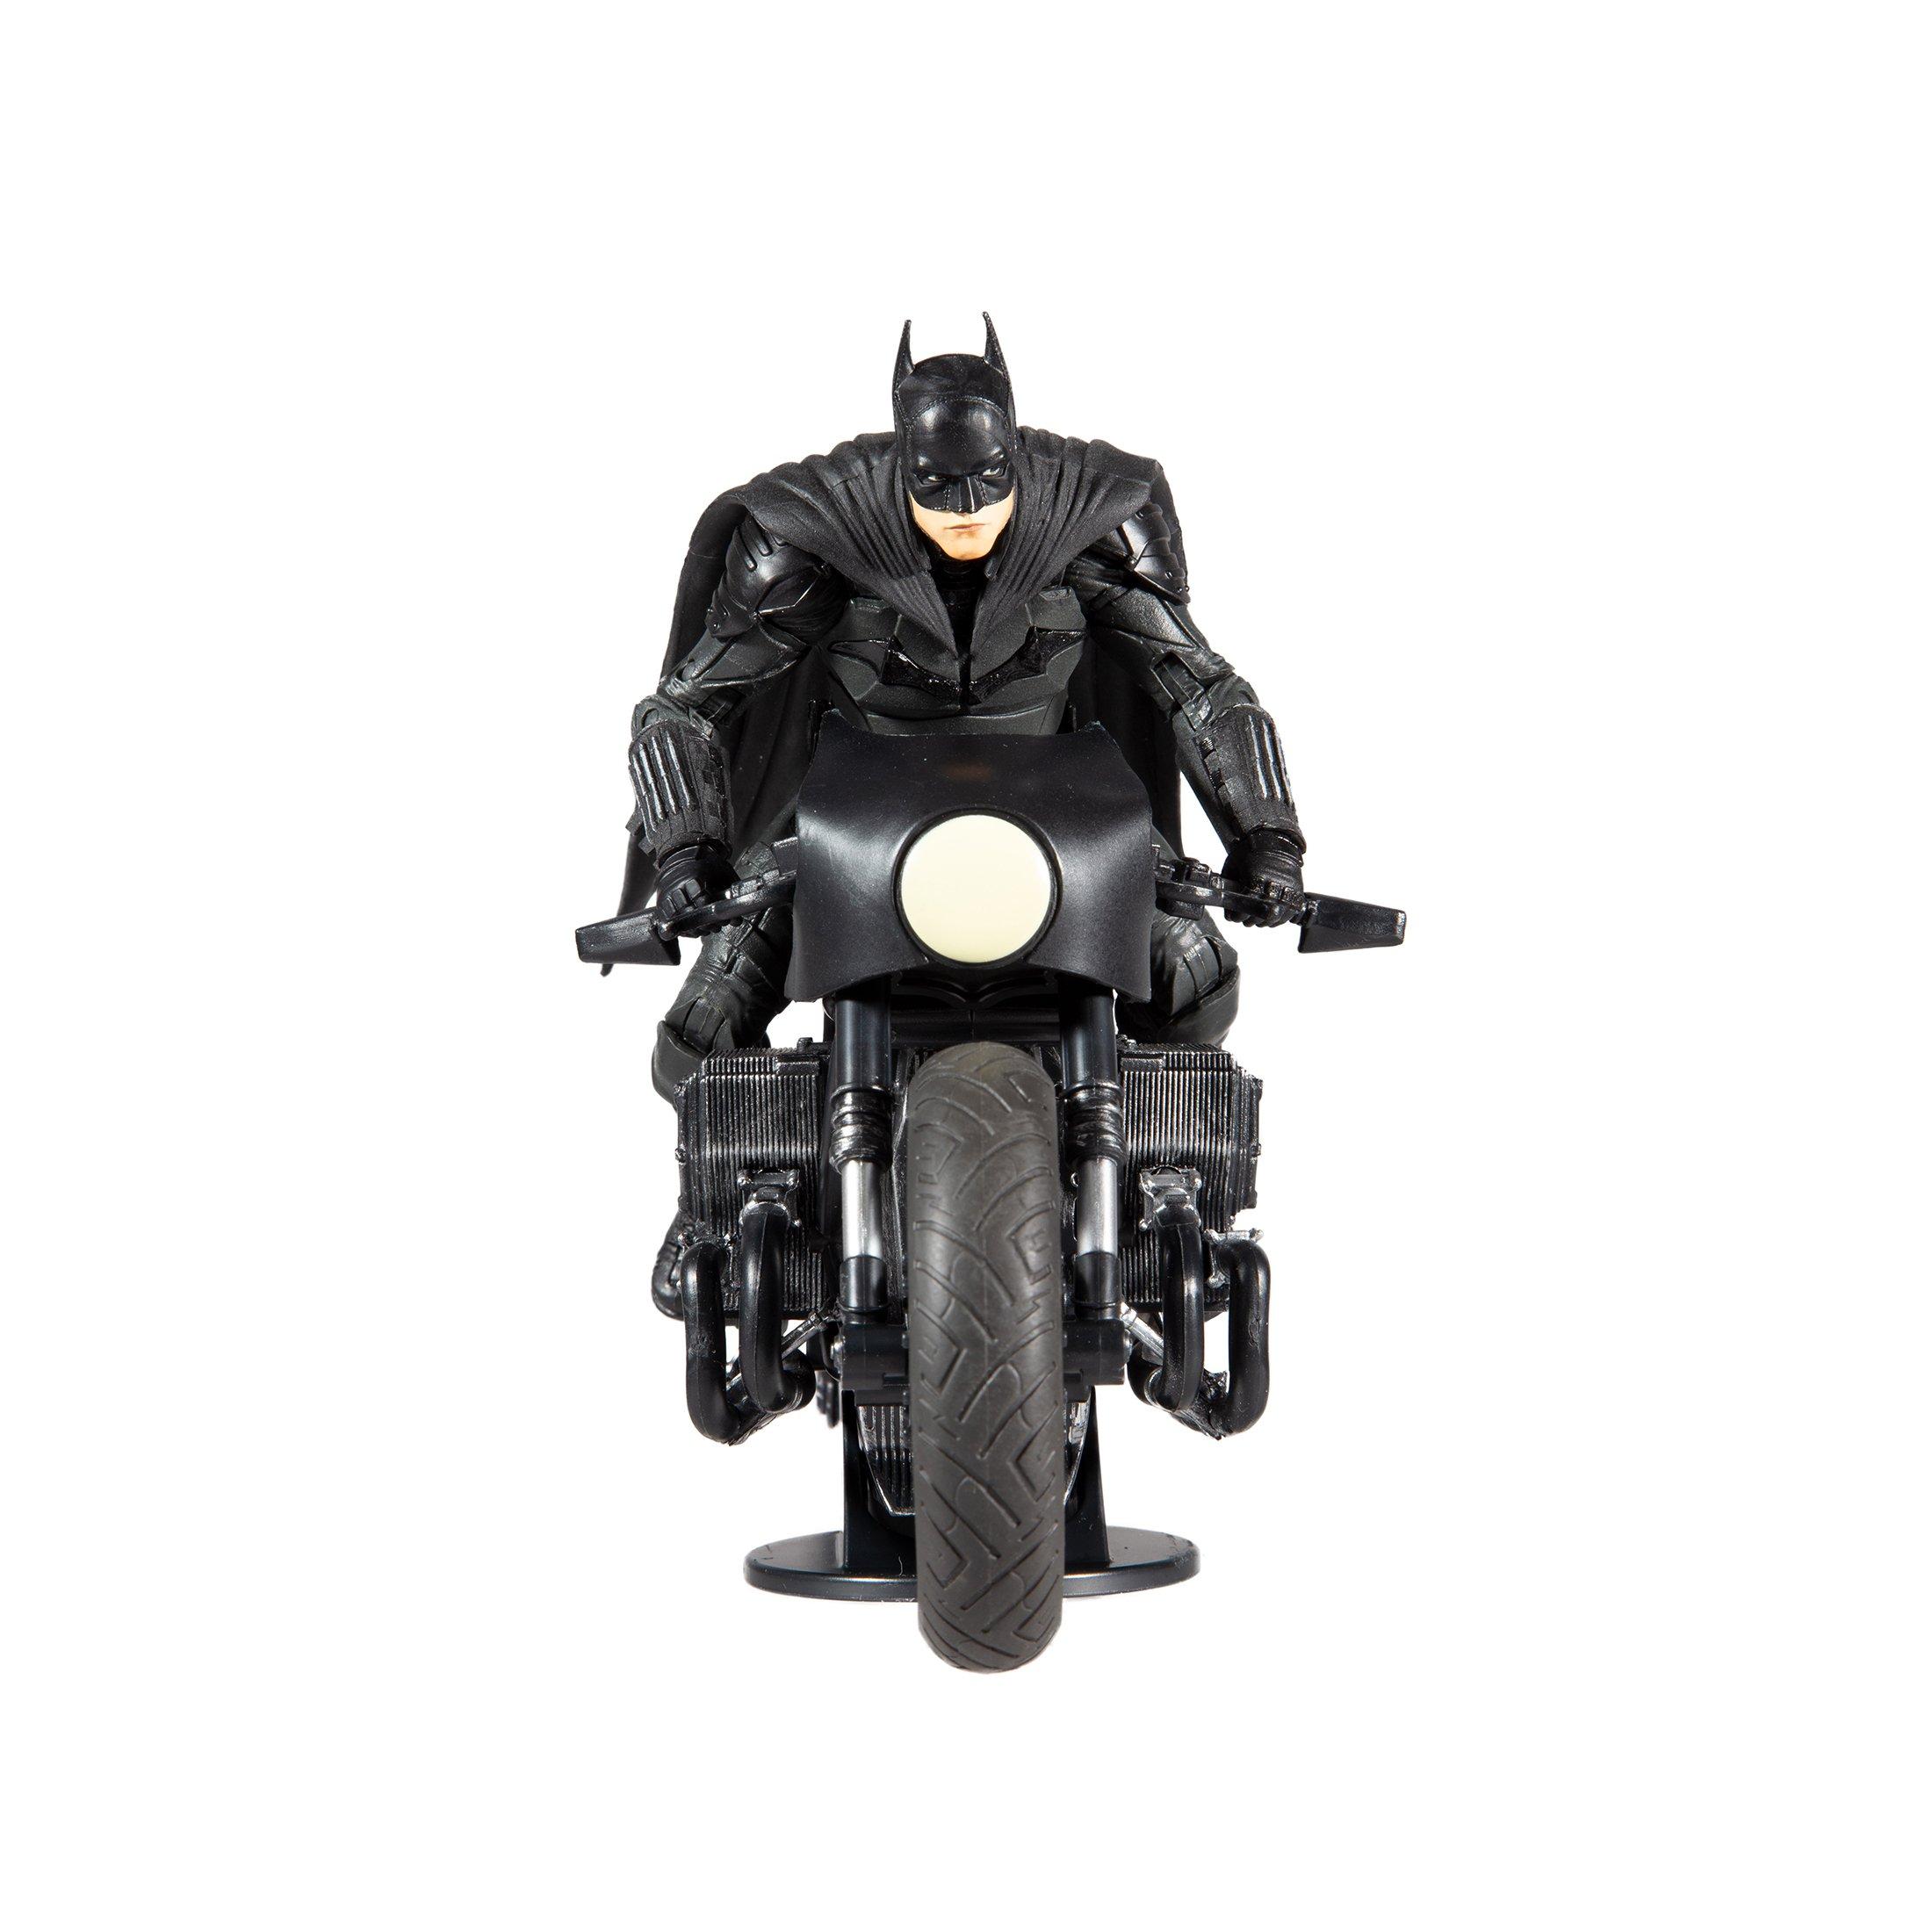 Motorcycle Monday: The Batman